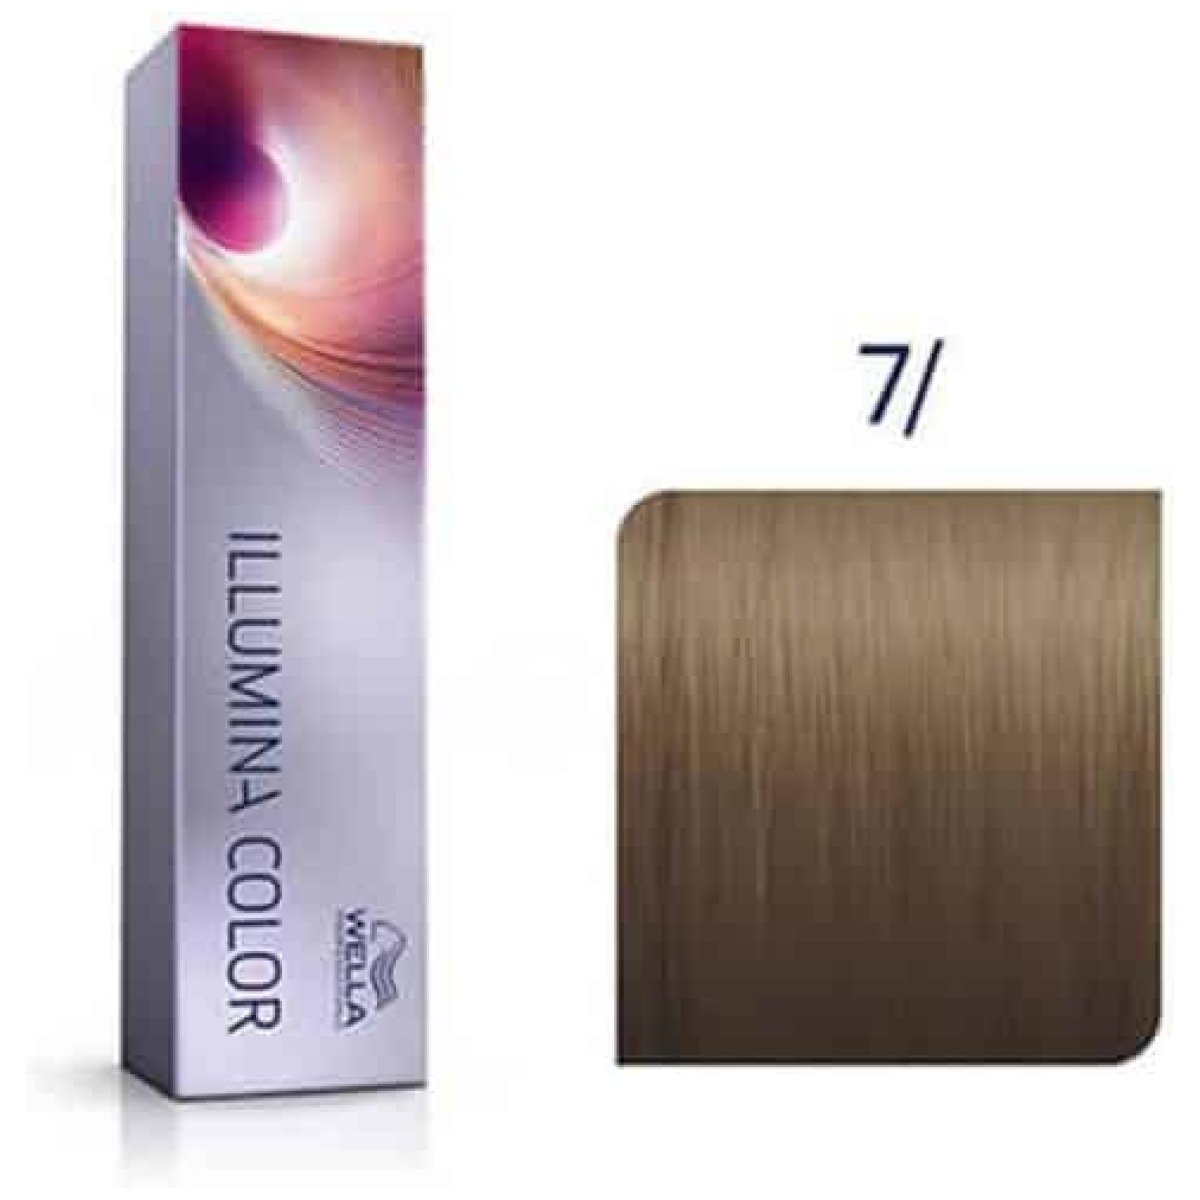 Wella Professionals Illumina Hair Color 7/ Medium Blonde